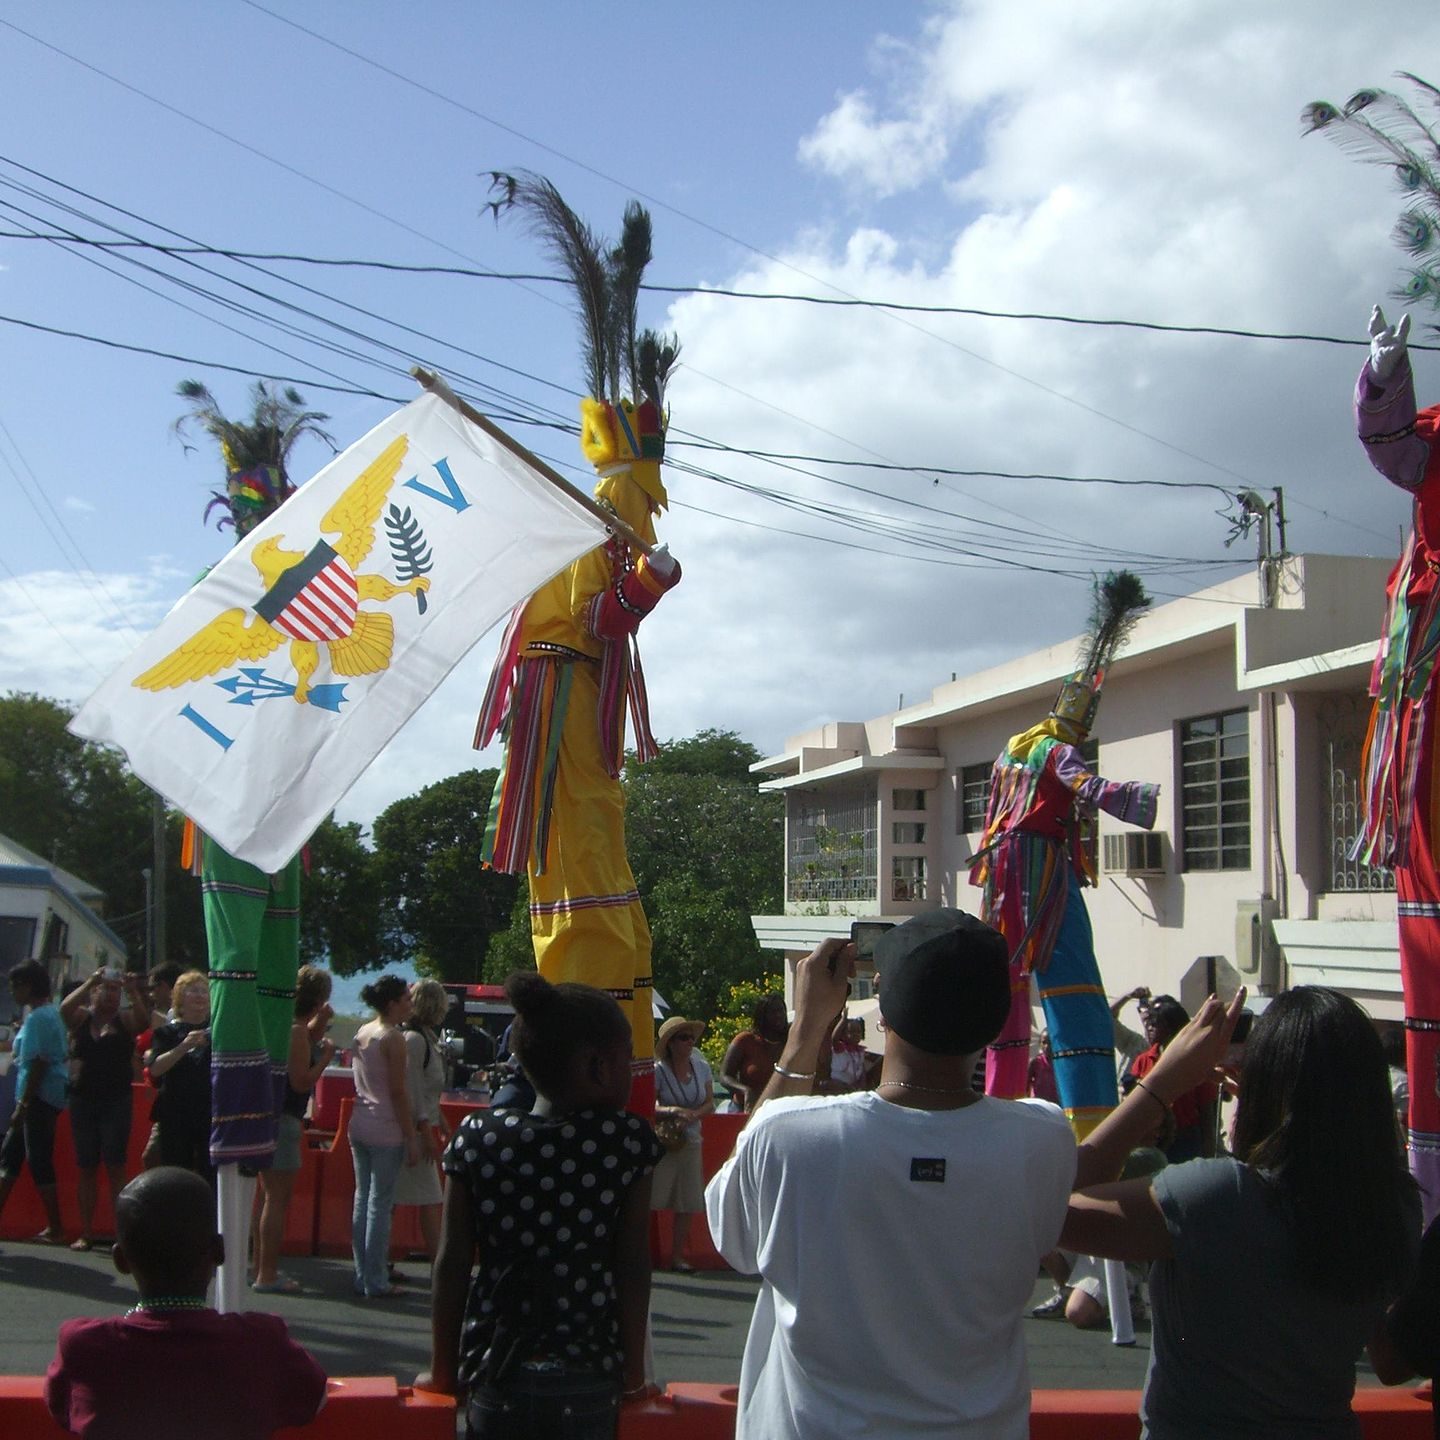 Shot of flag at carnival festival